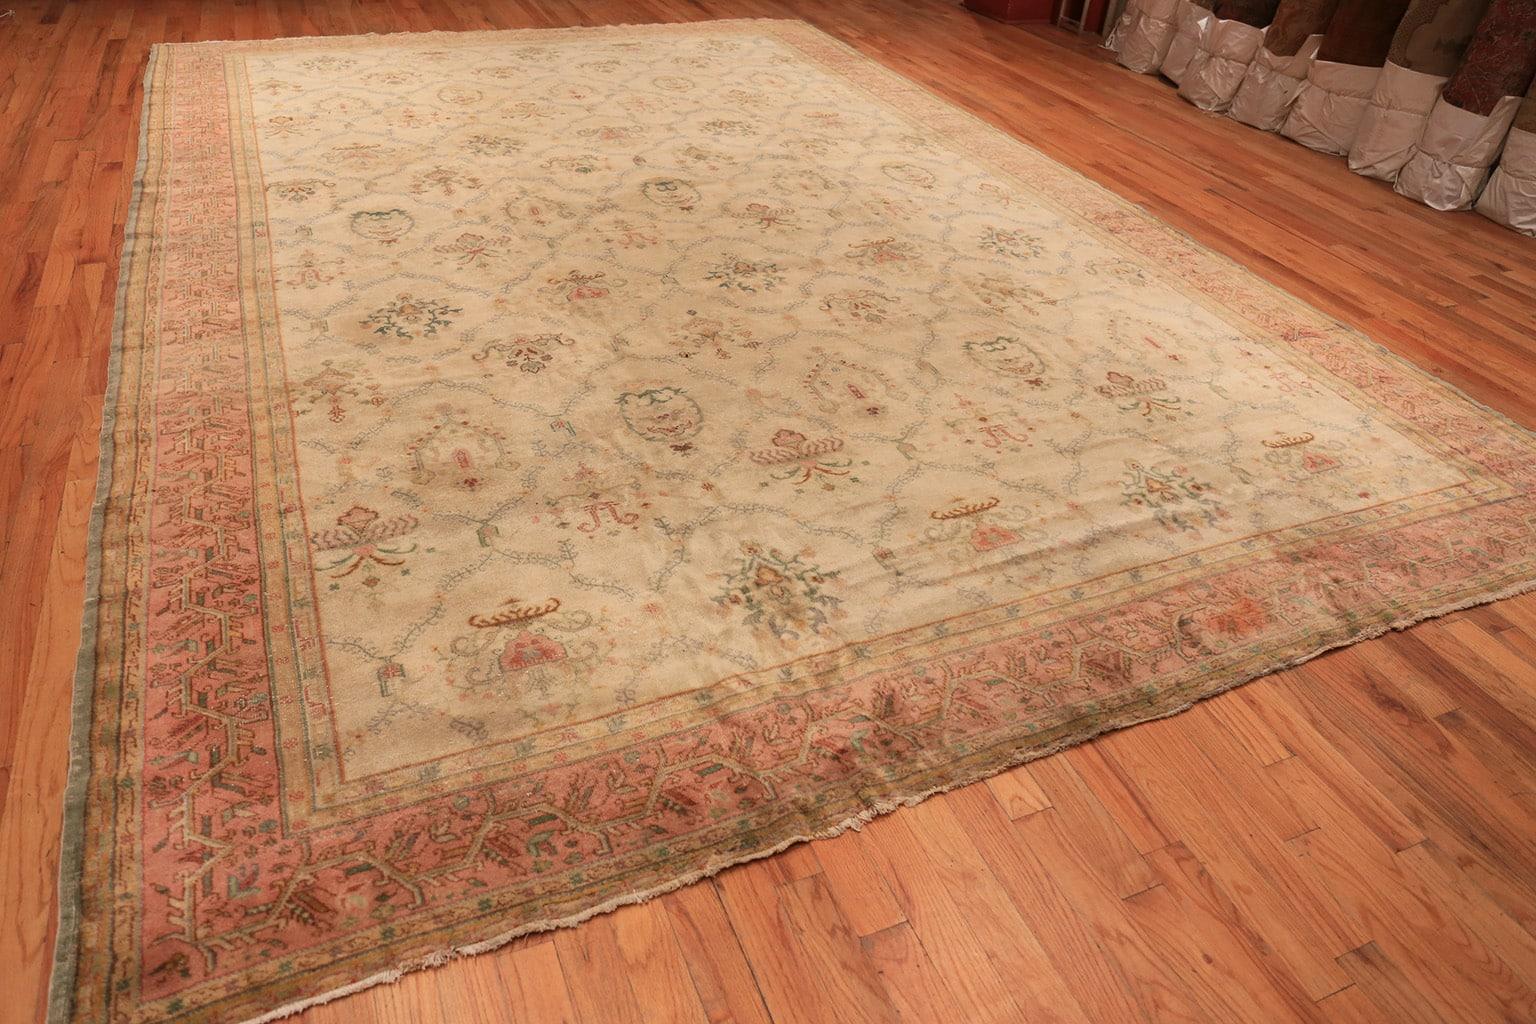 Vintage Sivas Teppich, Herkunft: Türkei, um die Mitte des 20. Jahrhunderts - Größe: 3,58 m x 5,26 m (11 ft 9 in x 17 ft 3 in). 

Eine satte, grapefruitrosa Umrandung umgibt den Sivas-Teppich. In seinem Inneren befindet sich eine angenehm